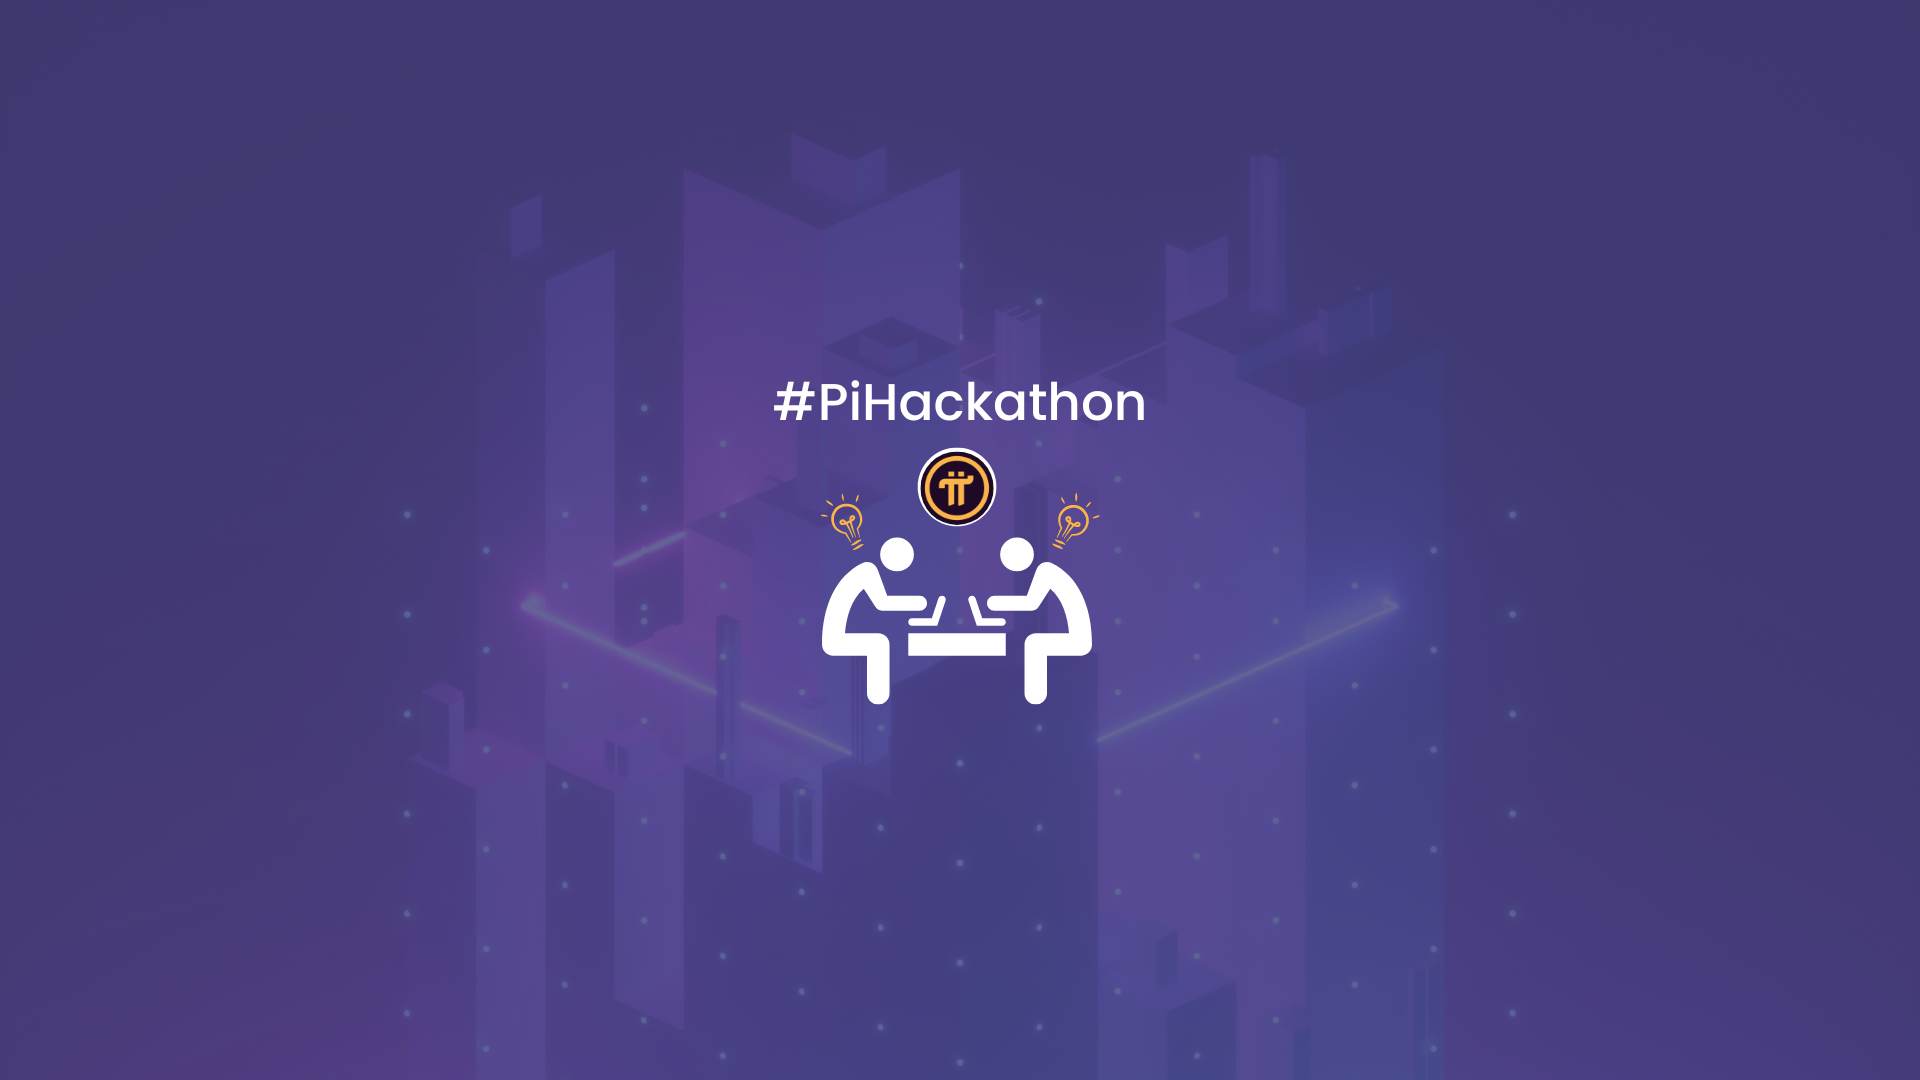 #PiHackathon has launched!